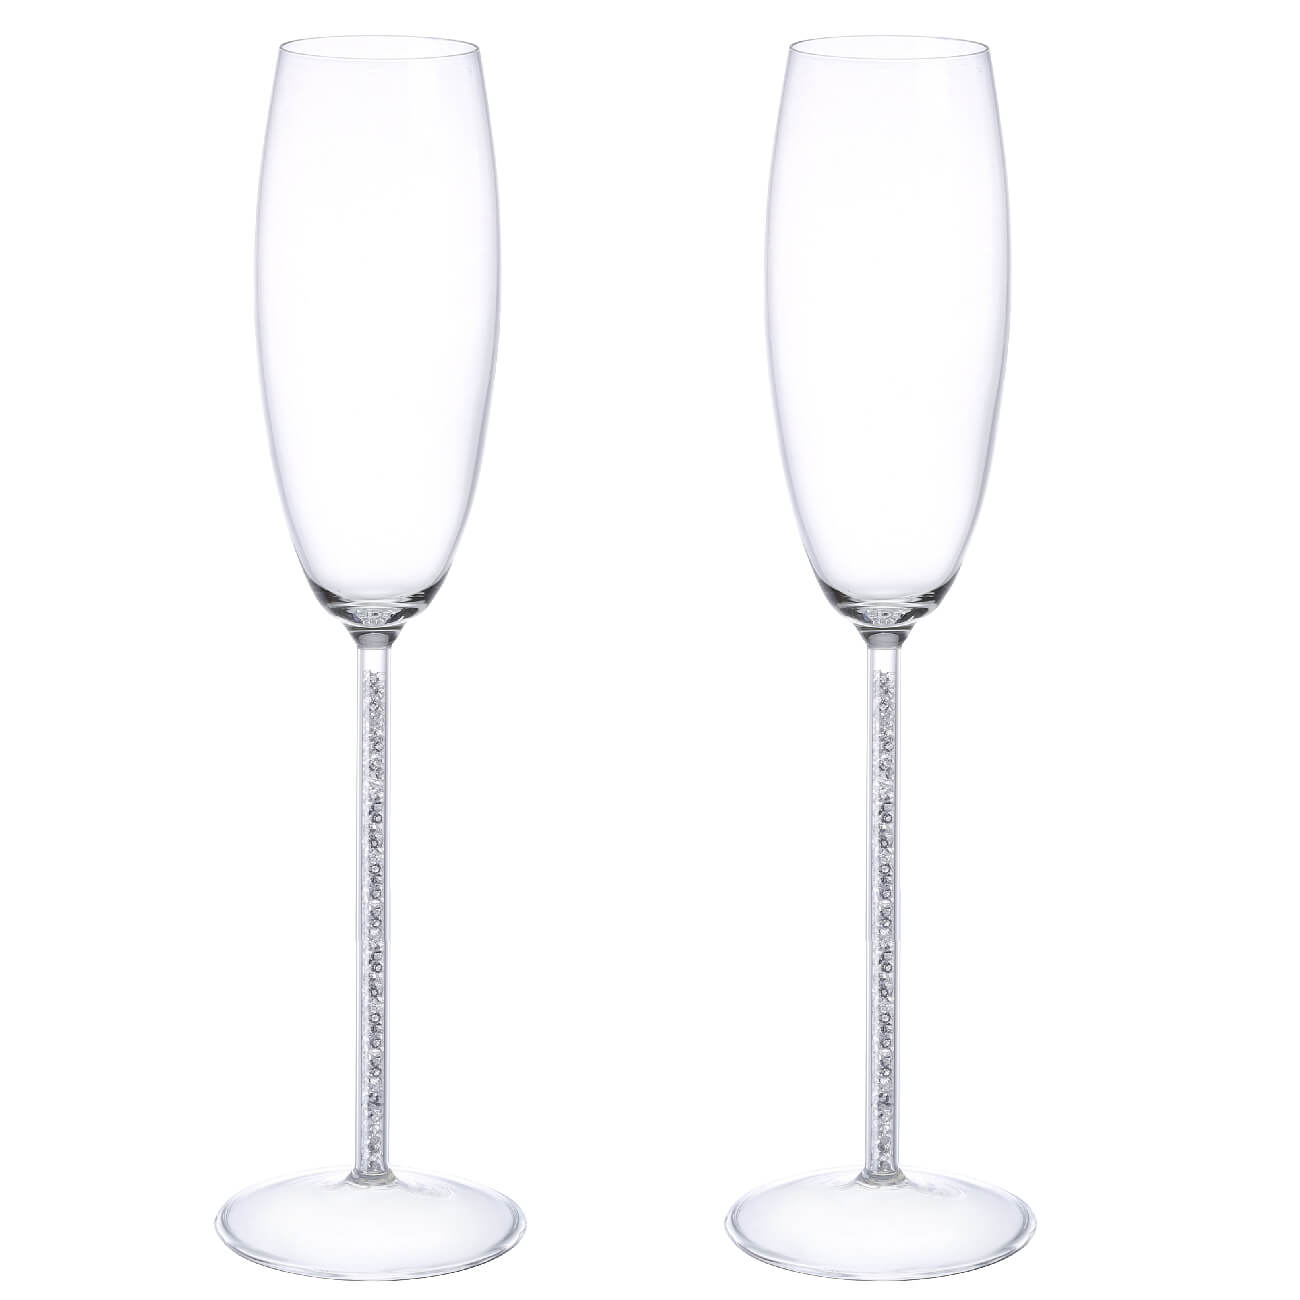 Бокал для шампанского, 180 мл, 2 шт, стекло/стразы, Crystal decor бокалы для шампанского bormioli rocco